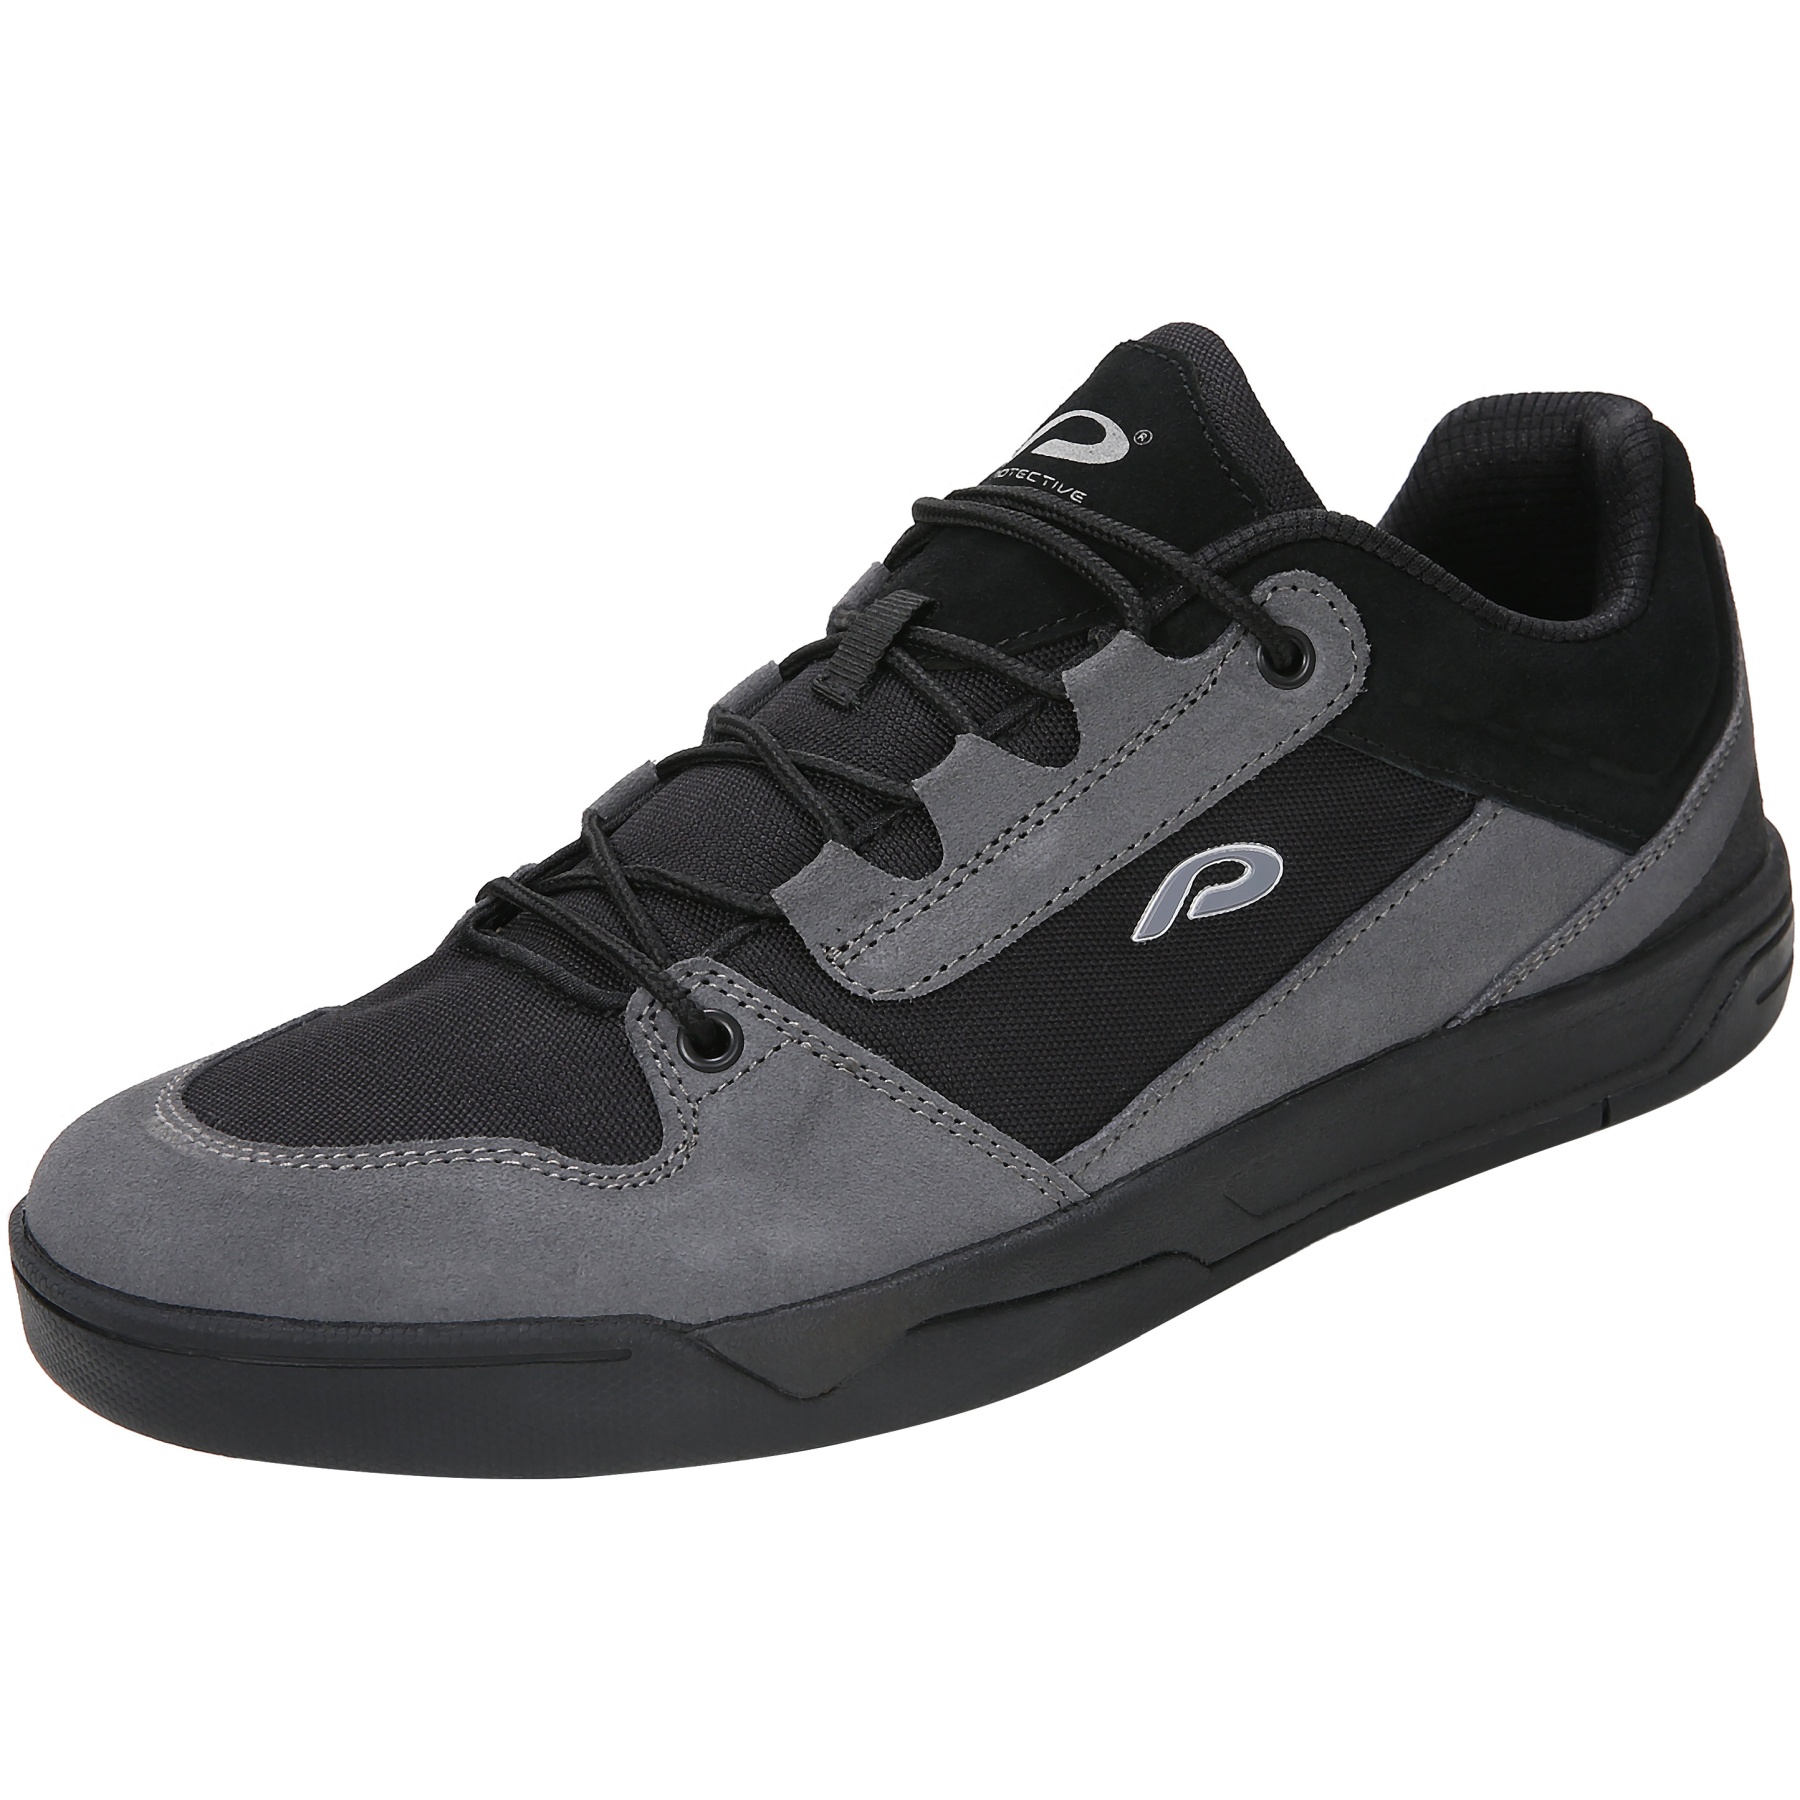 Produktbild von PROTECTIVE P-Skids Schuhe Unisex - schwarz